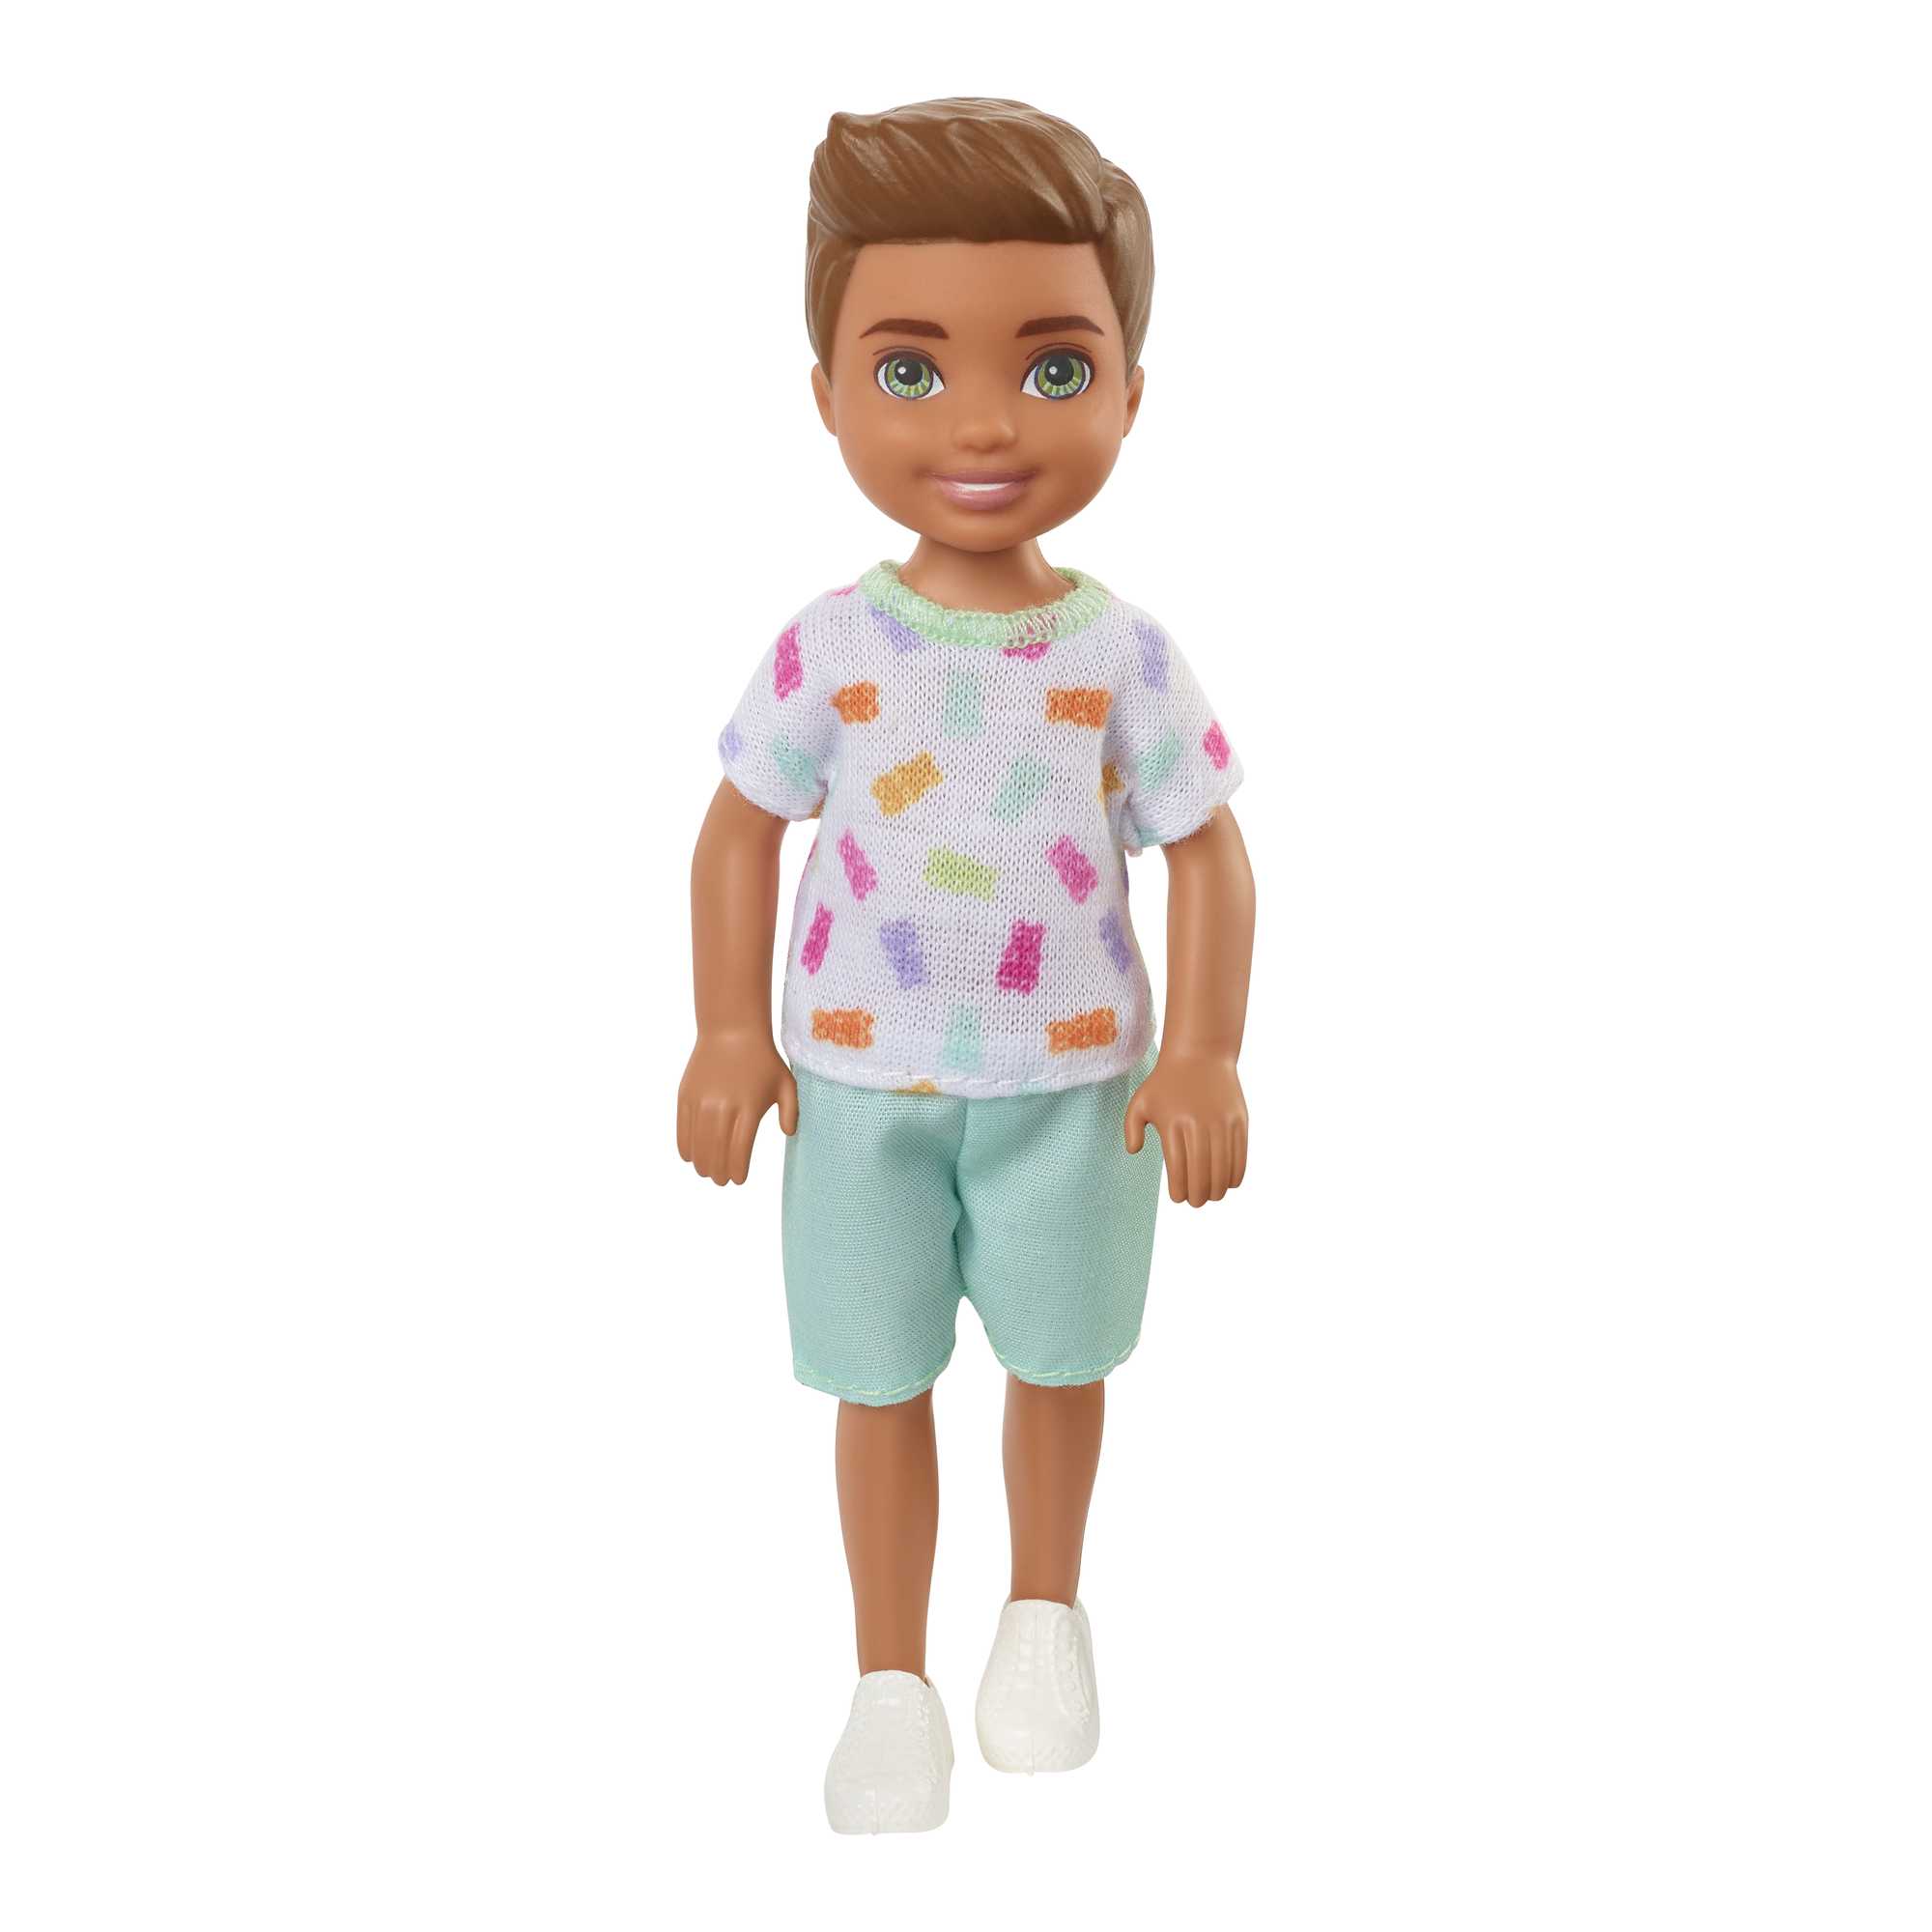 Barbie™ Short-Sleeve T-Shirt for Toddler